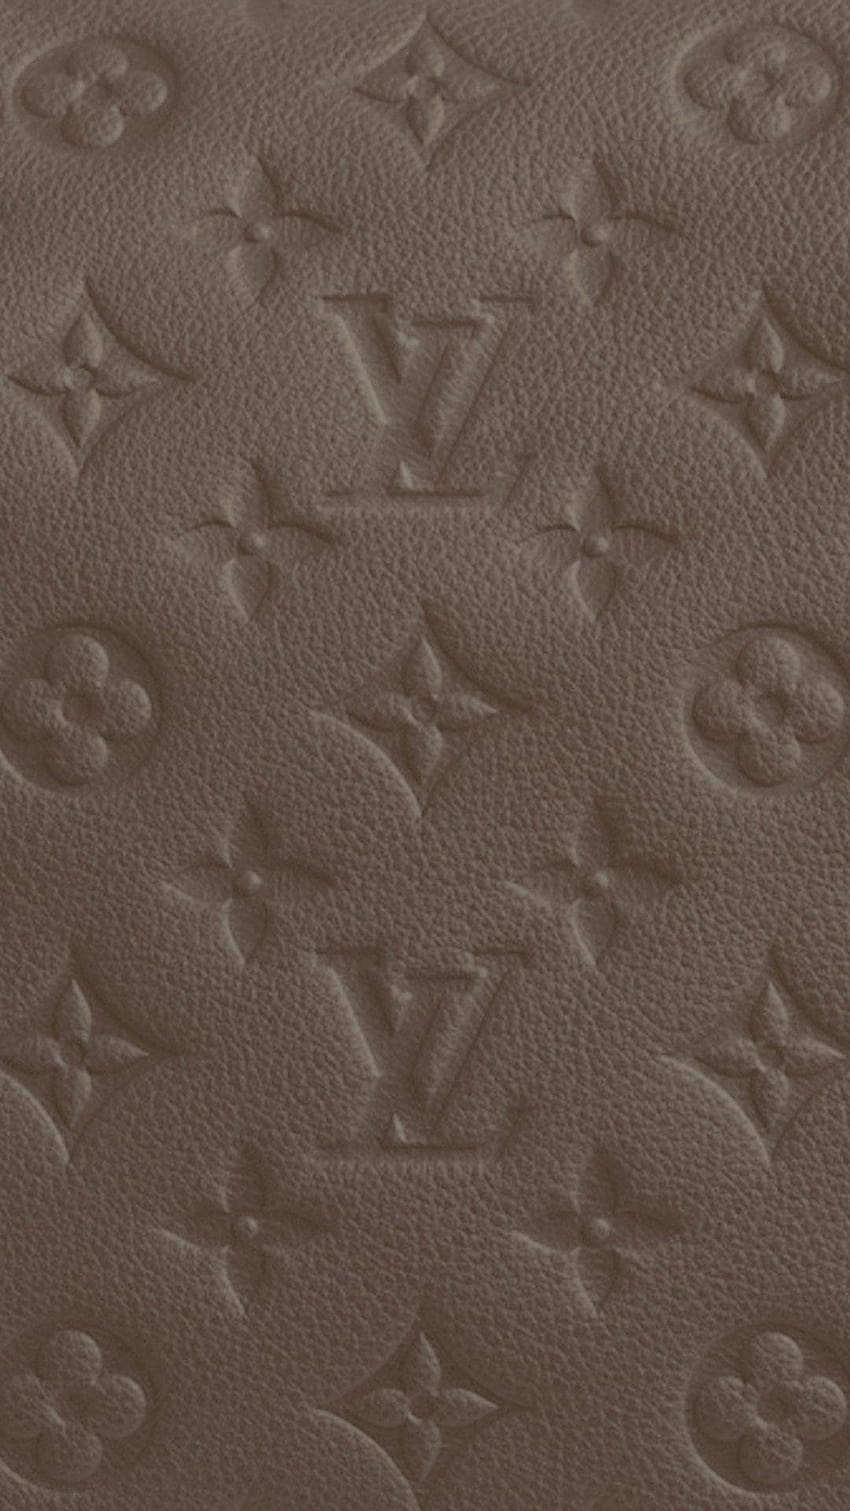 LV, Louis Vuitton wallpaper ponsel HD